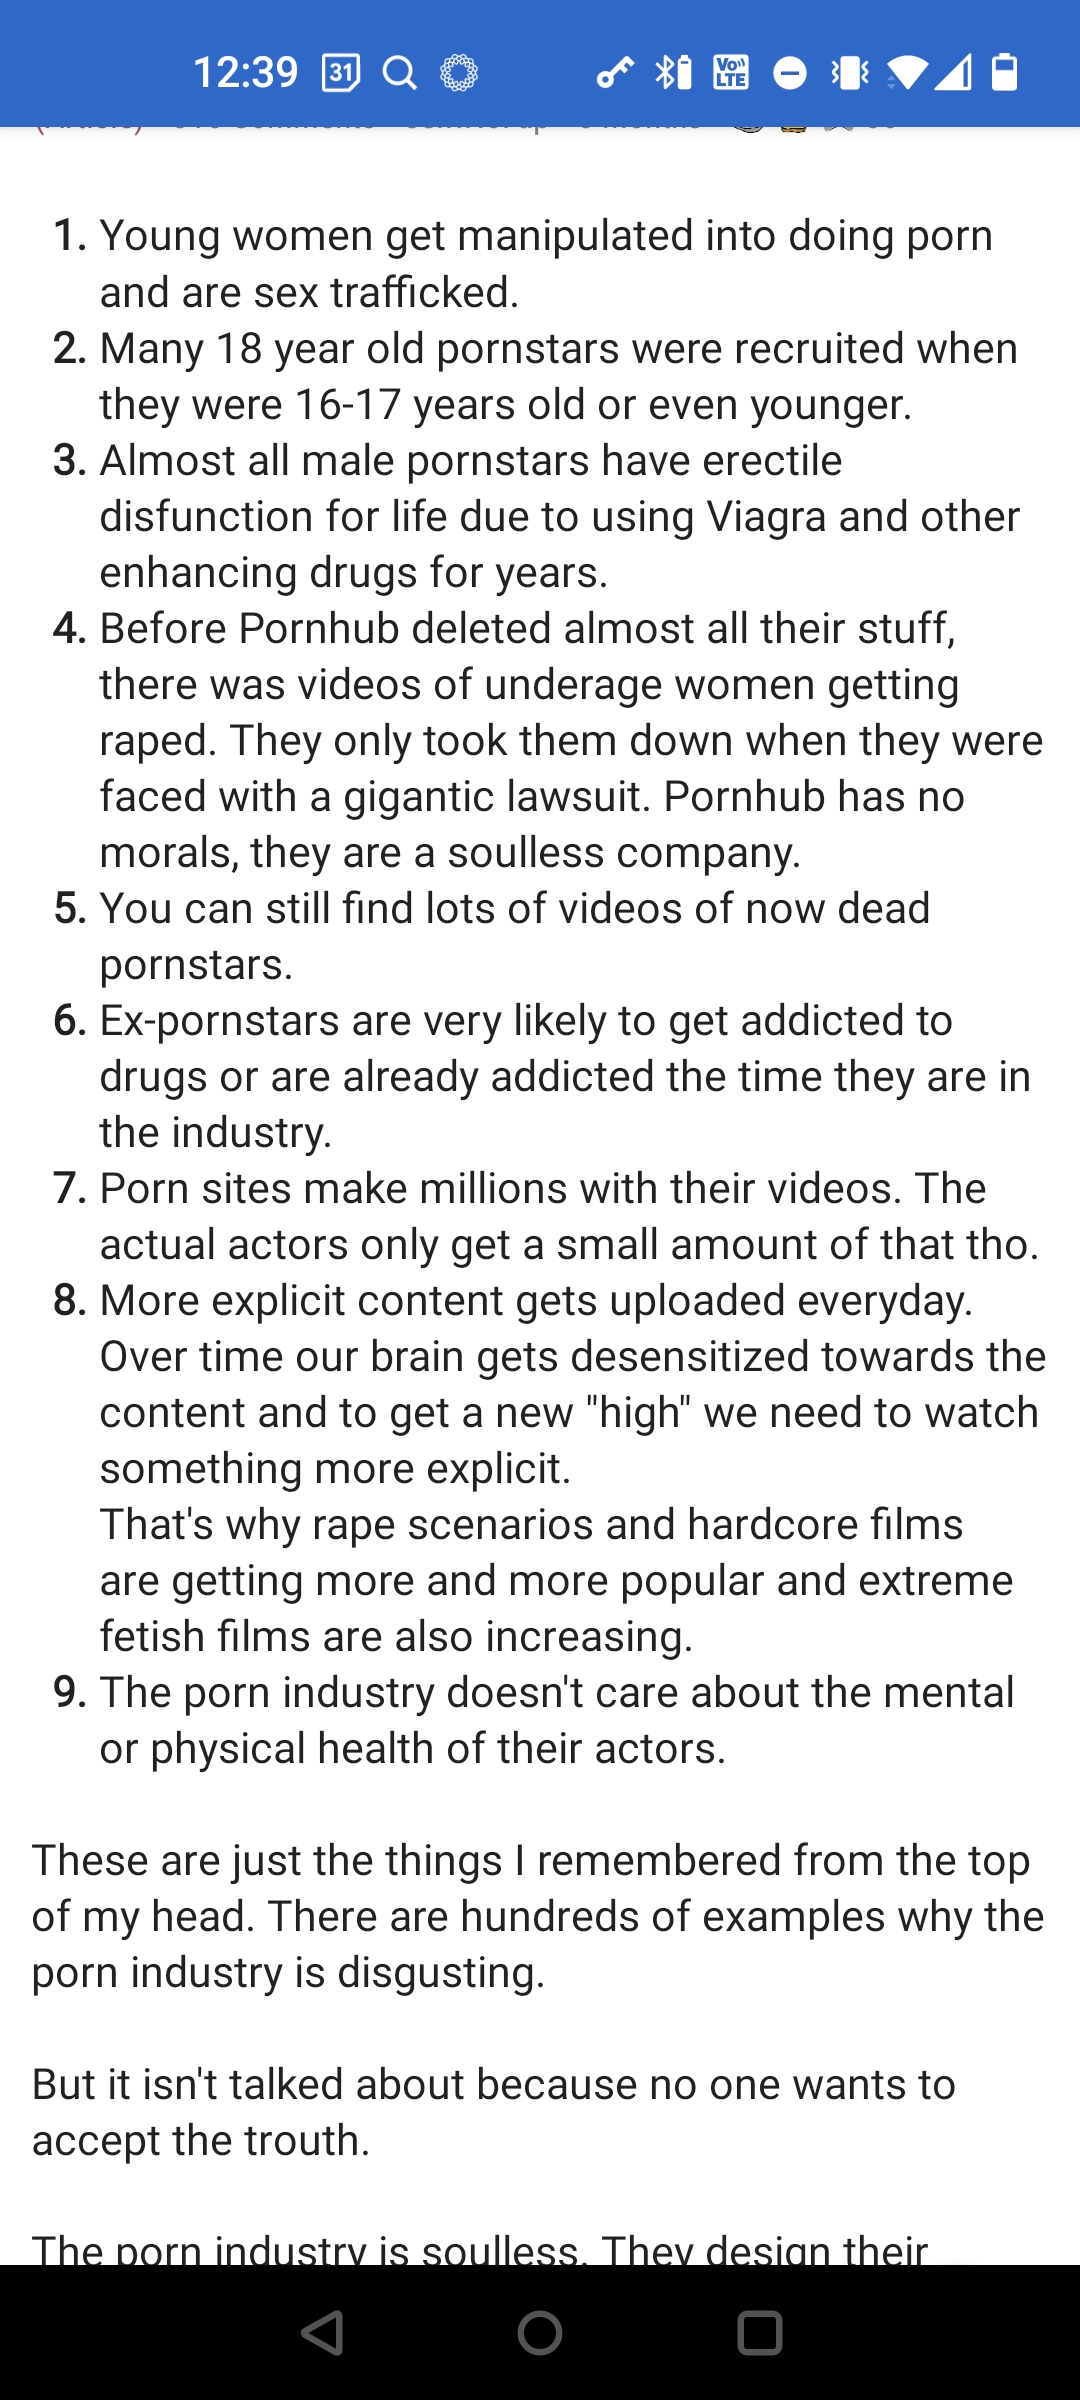 Porno i forhold og om porno generelt - Skråblikk og generaliseringer bilde bilde